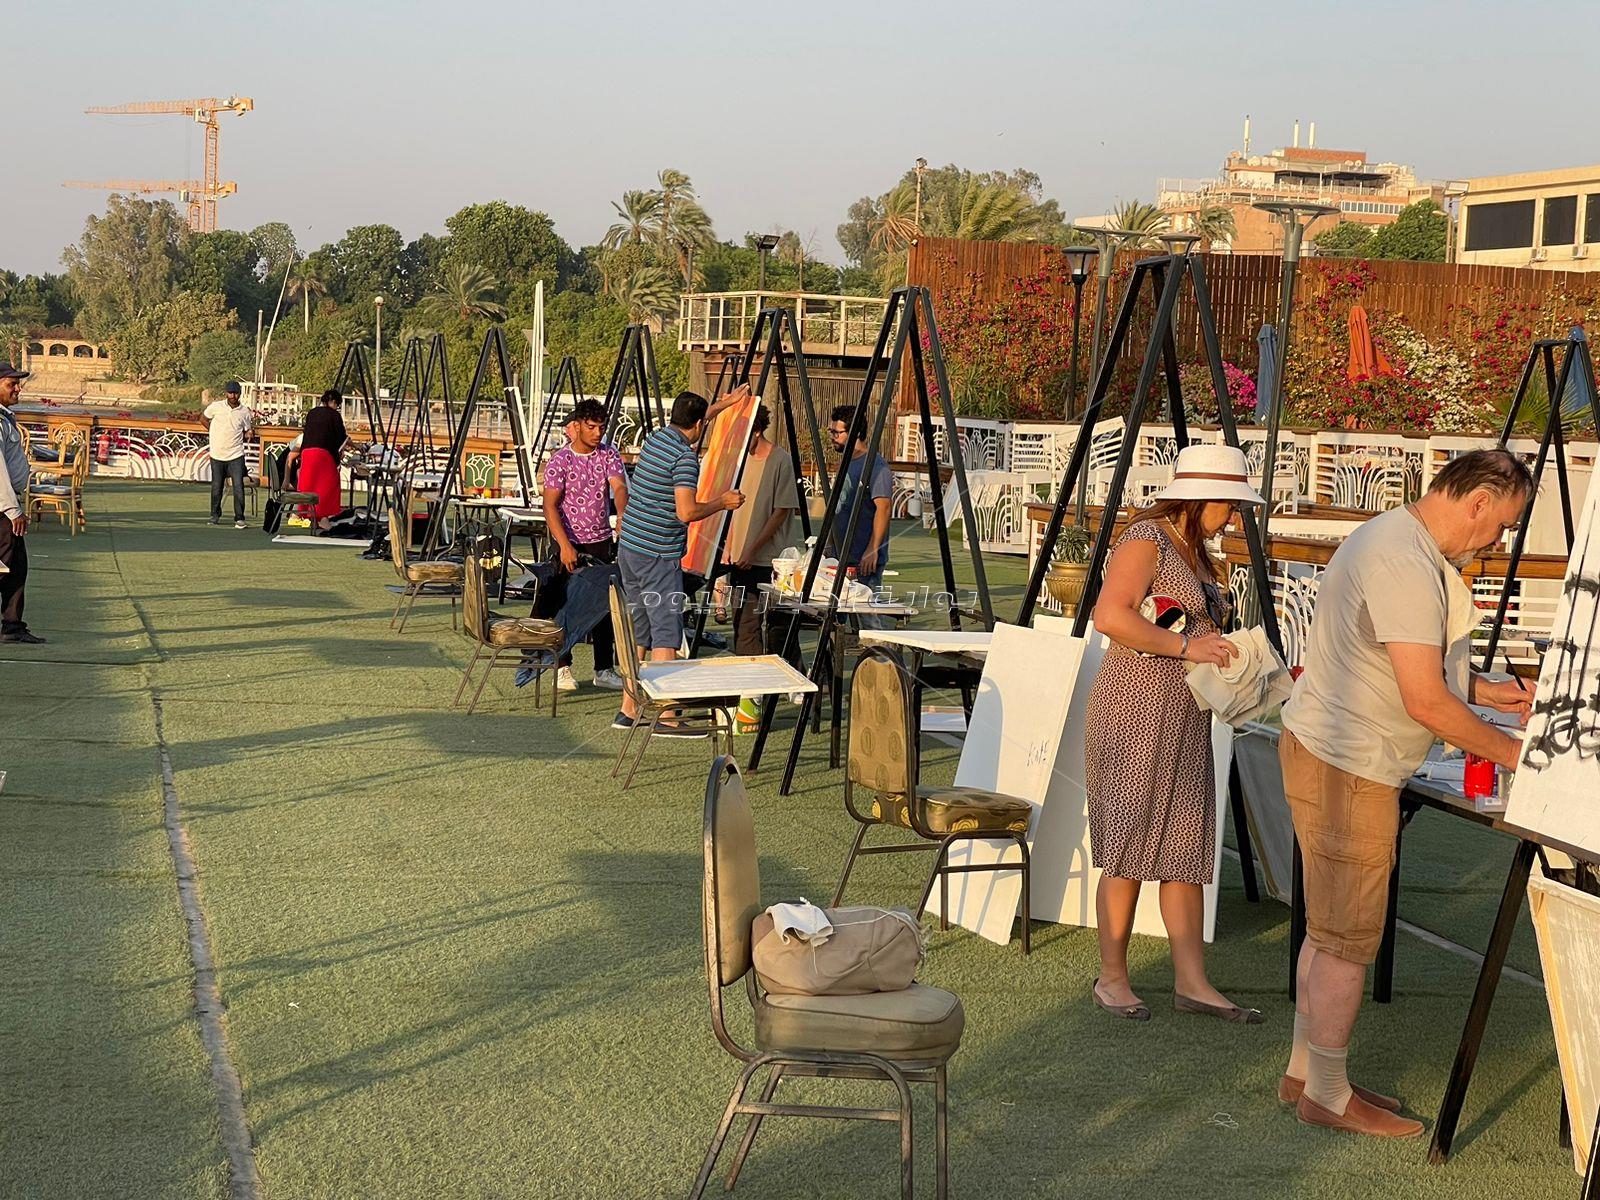 ختام فعاليات ملتقى النيل الدولي للفنون التشكيلية بالأقصر بإقامة معرض "توت عنخ آمون"